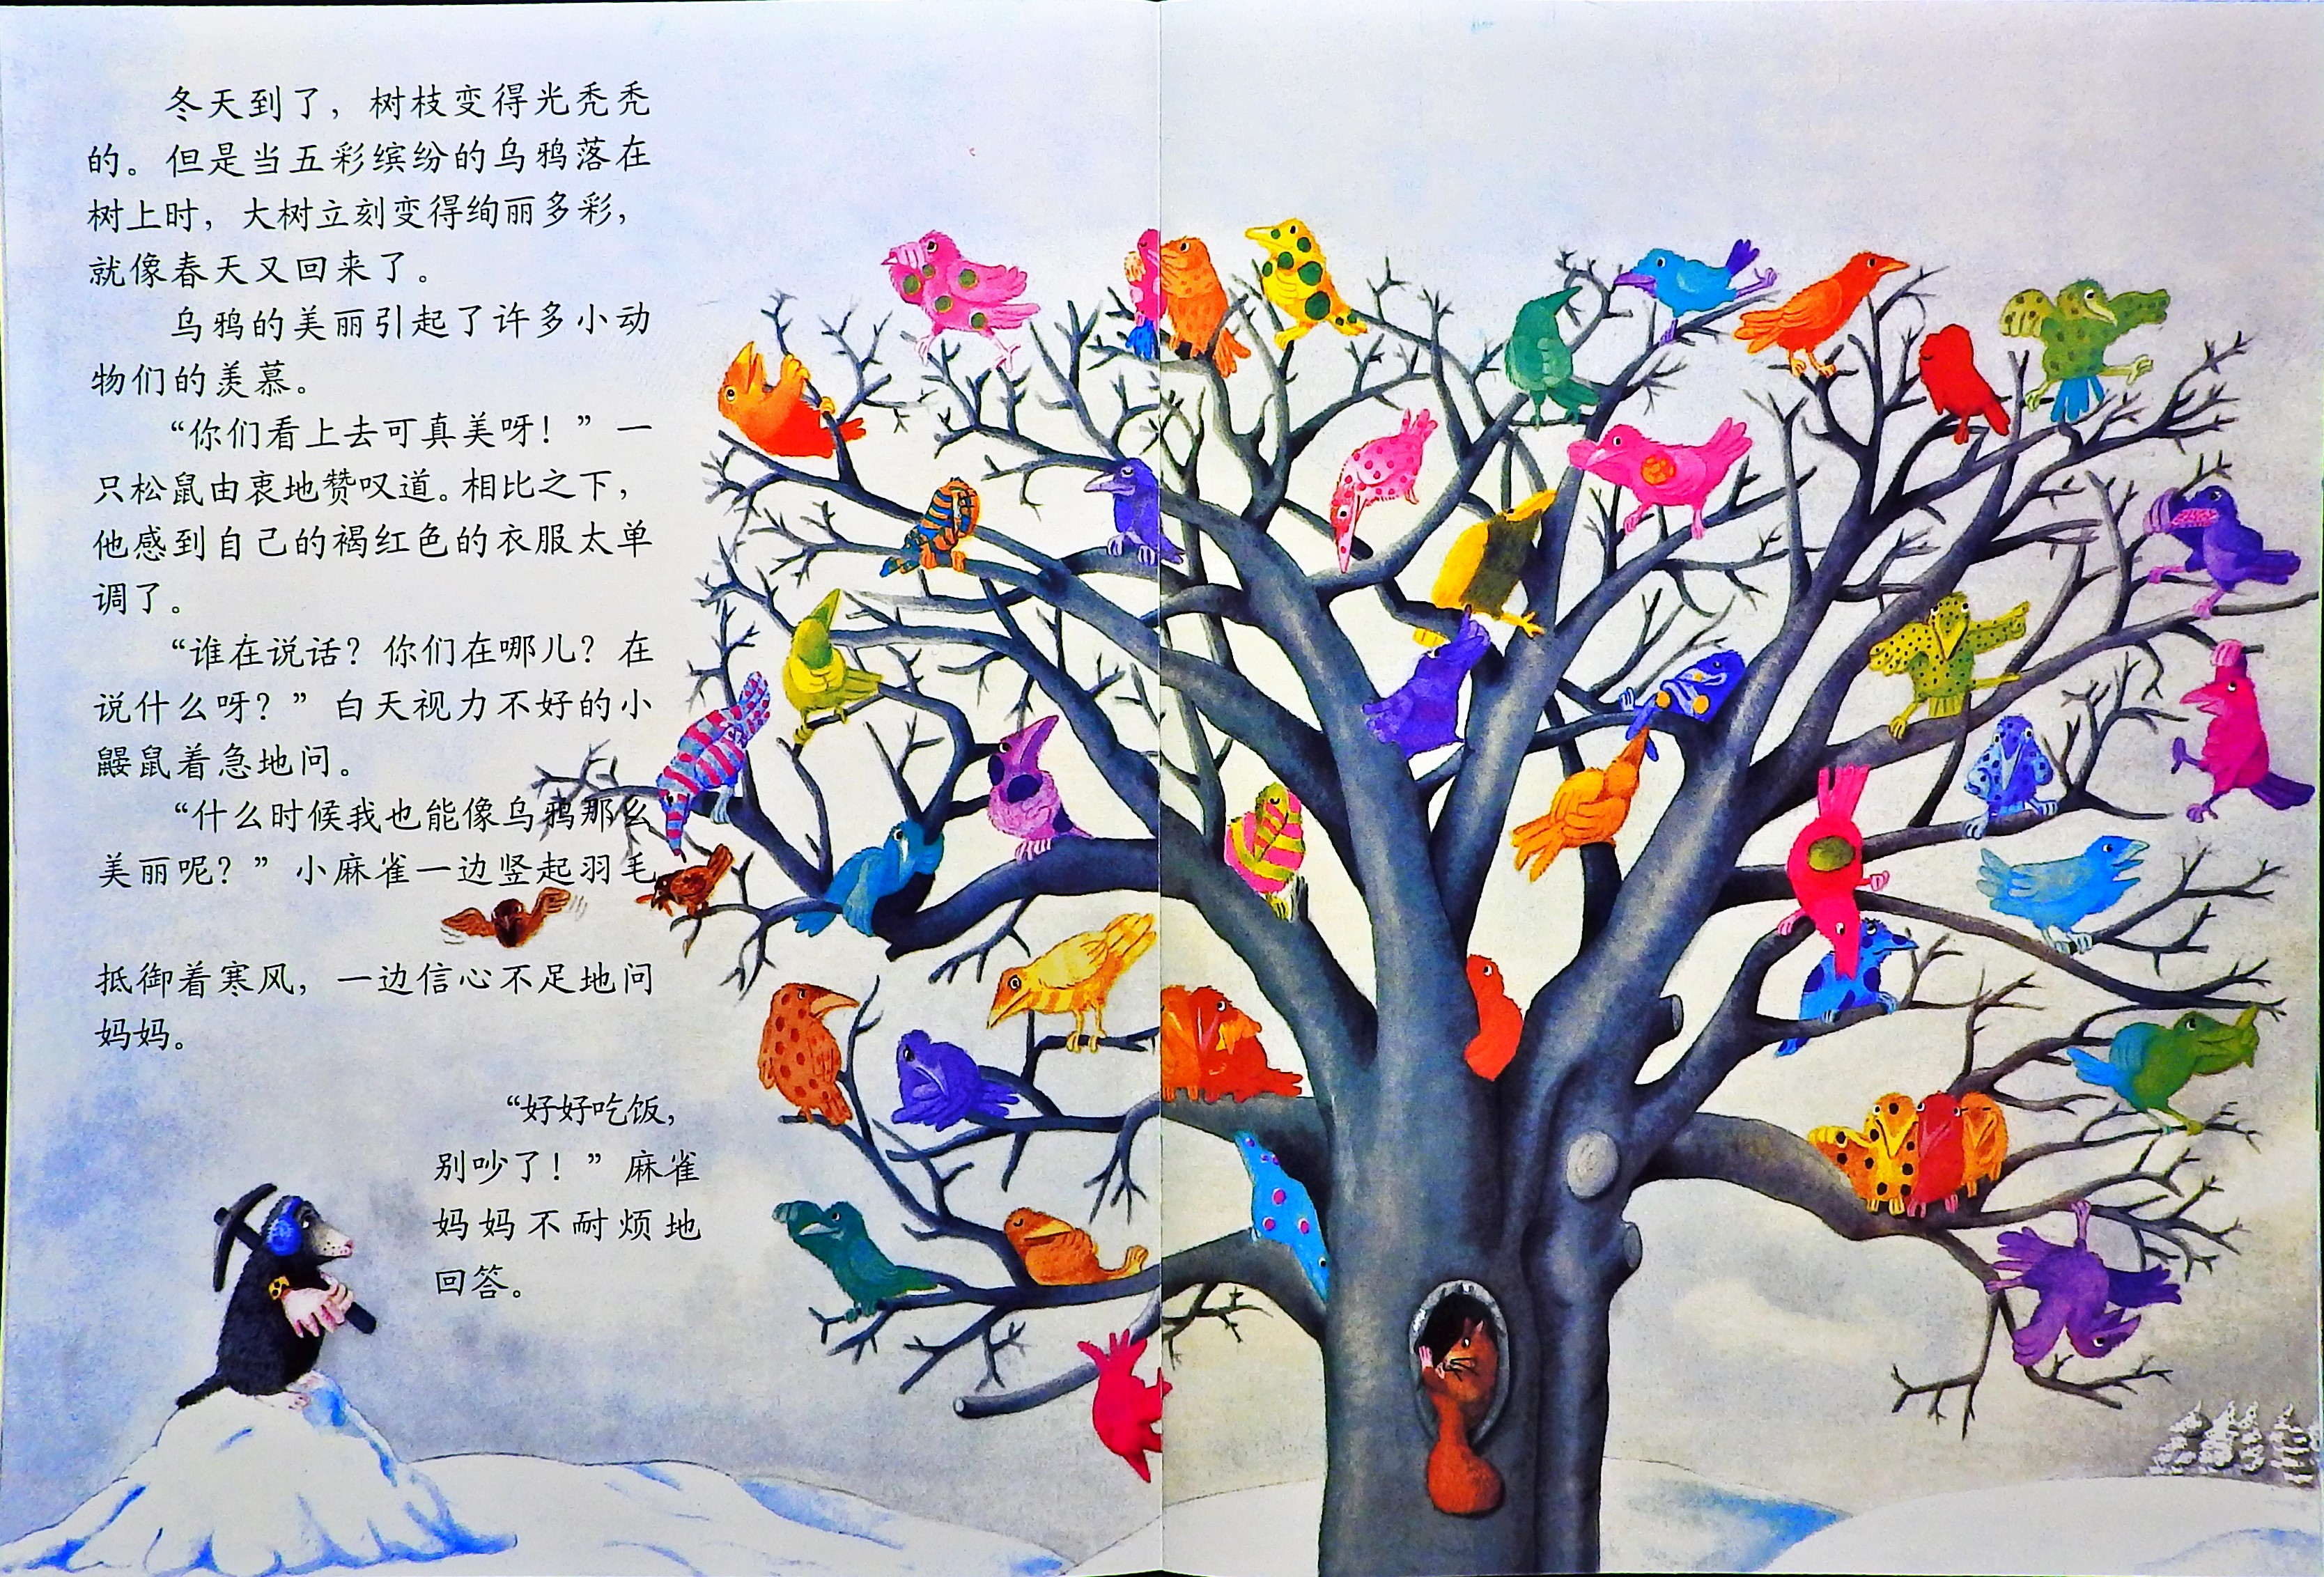 彩色的乌鸦 (05),绘本,绘本故事,绘本阅读,故事书,童书,图画书,课外阅读